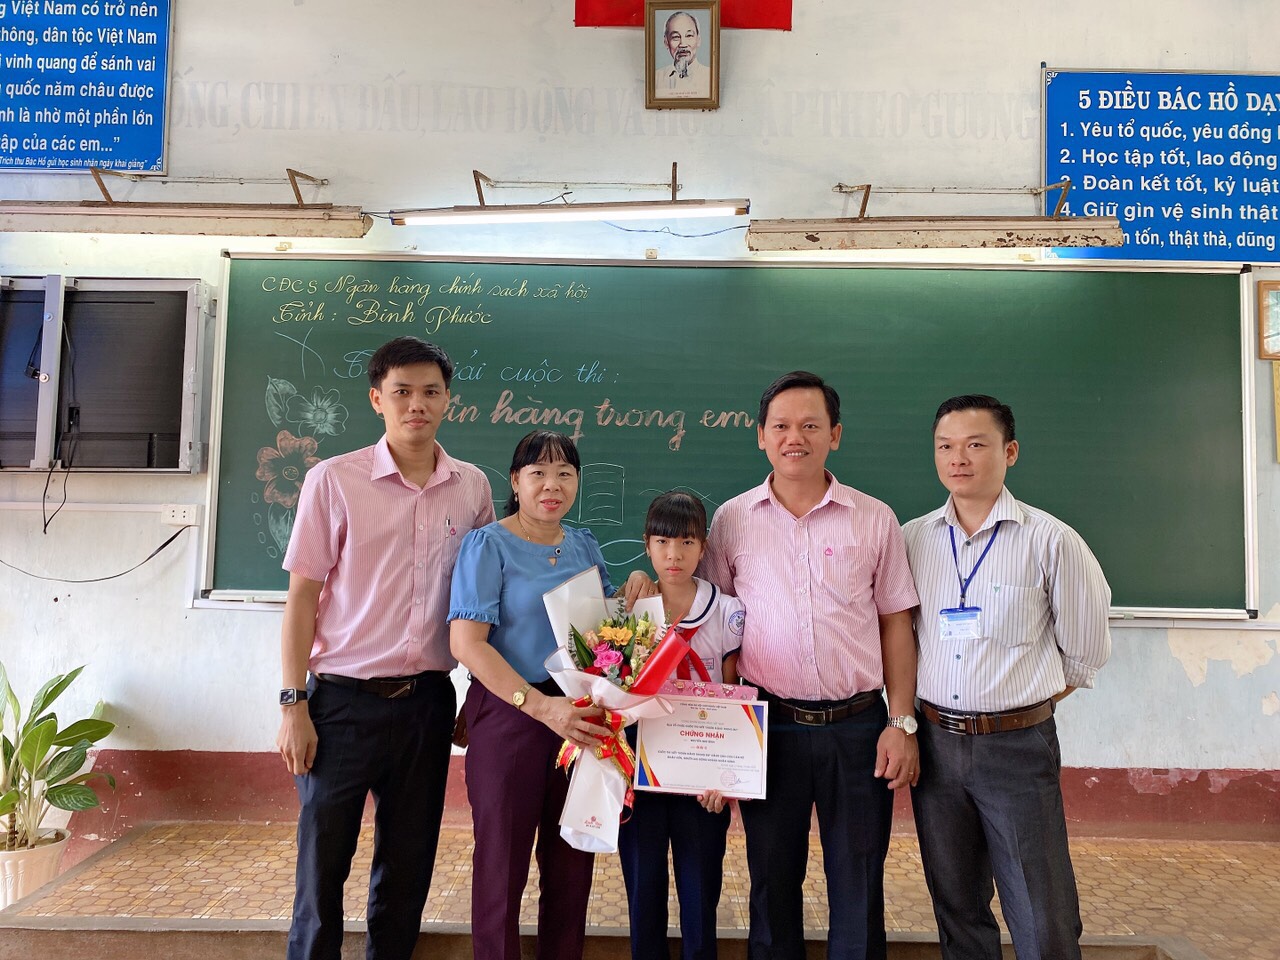 Đại diện lãnh đạo CĐCS NHCSXH tỉnh Bình Phước, Đại diện lãnh đạo trường TH TT Lộc Ninh A trao giấy chứng nhận và phần thưởng cho bé Nguyễn Như Bình